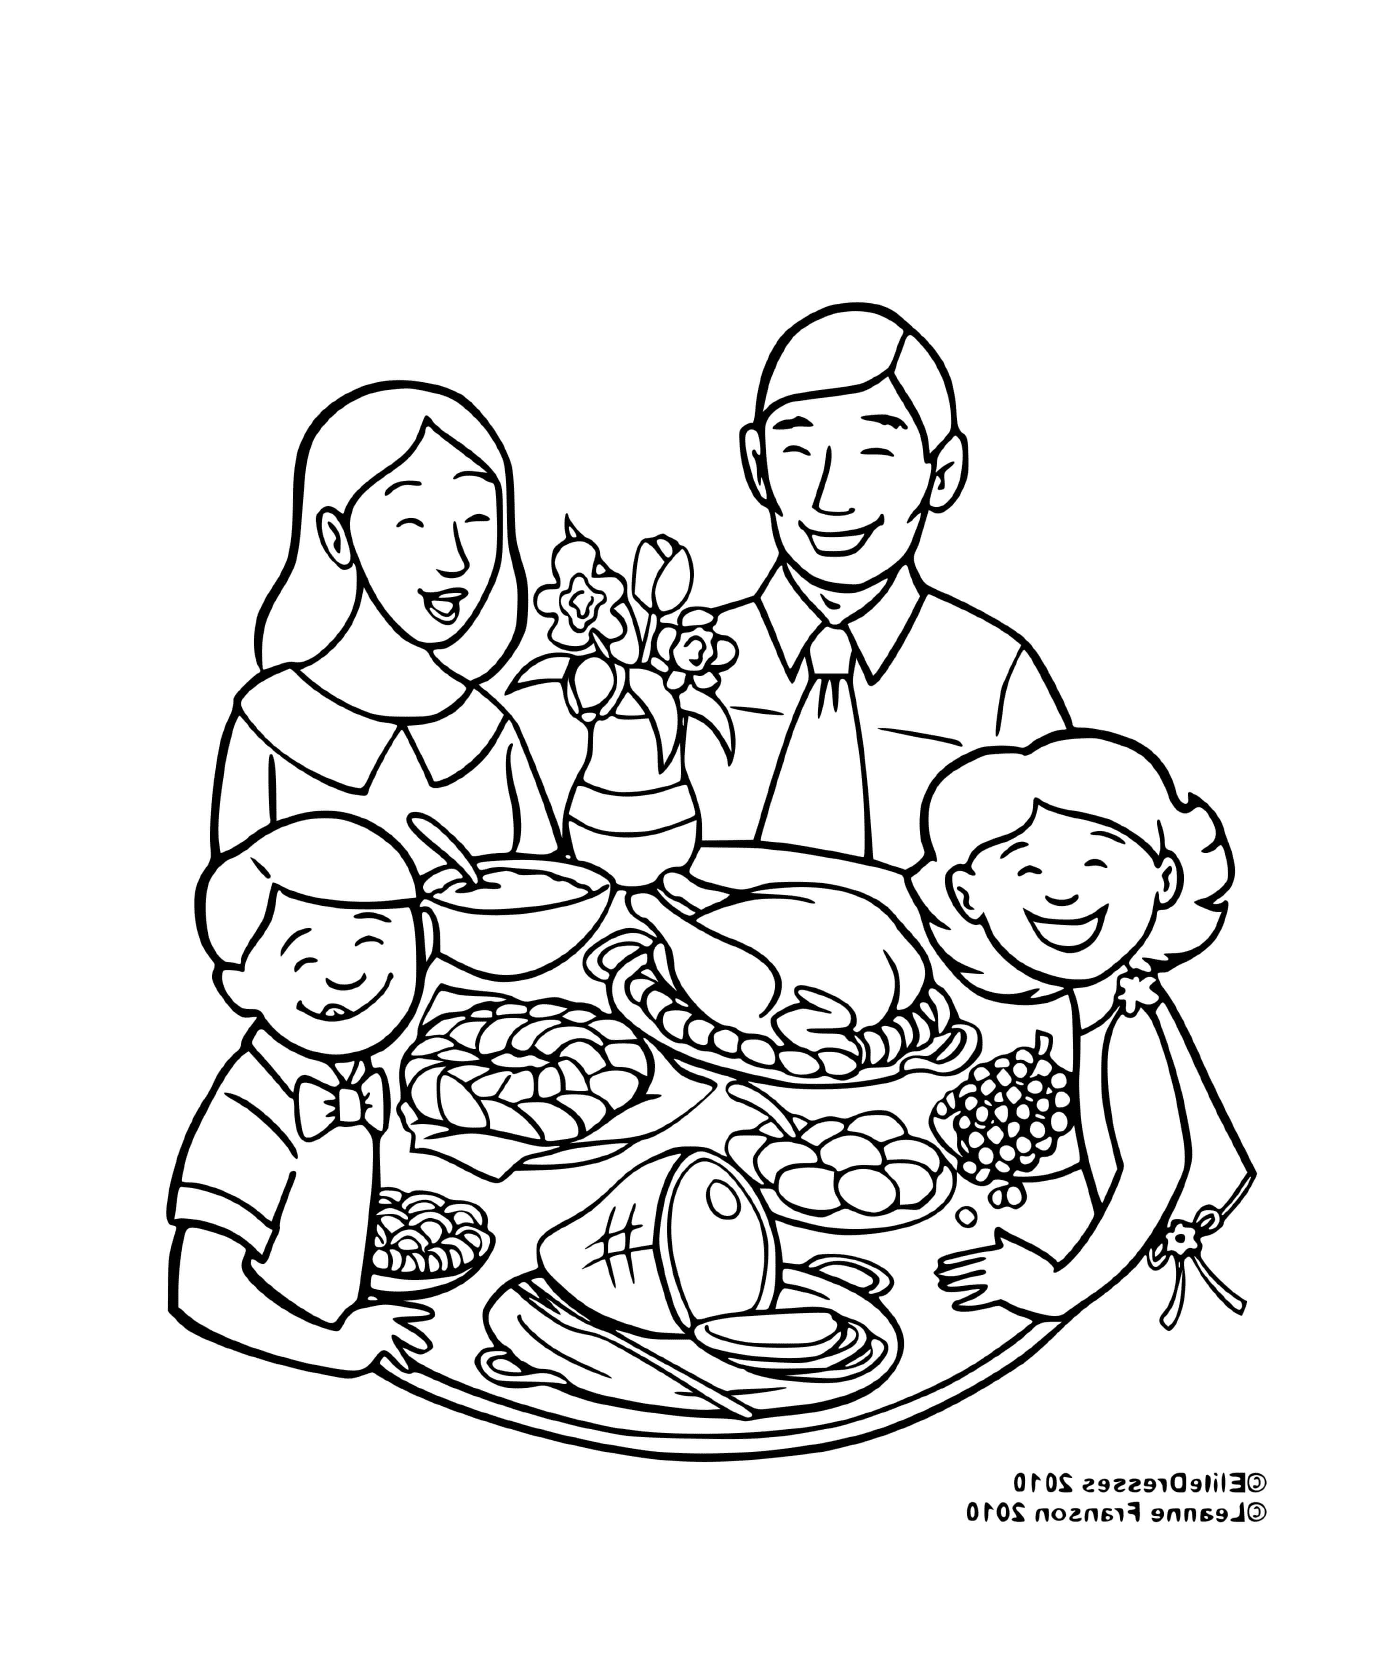  Una famiglia a suo agio per il pasto 